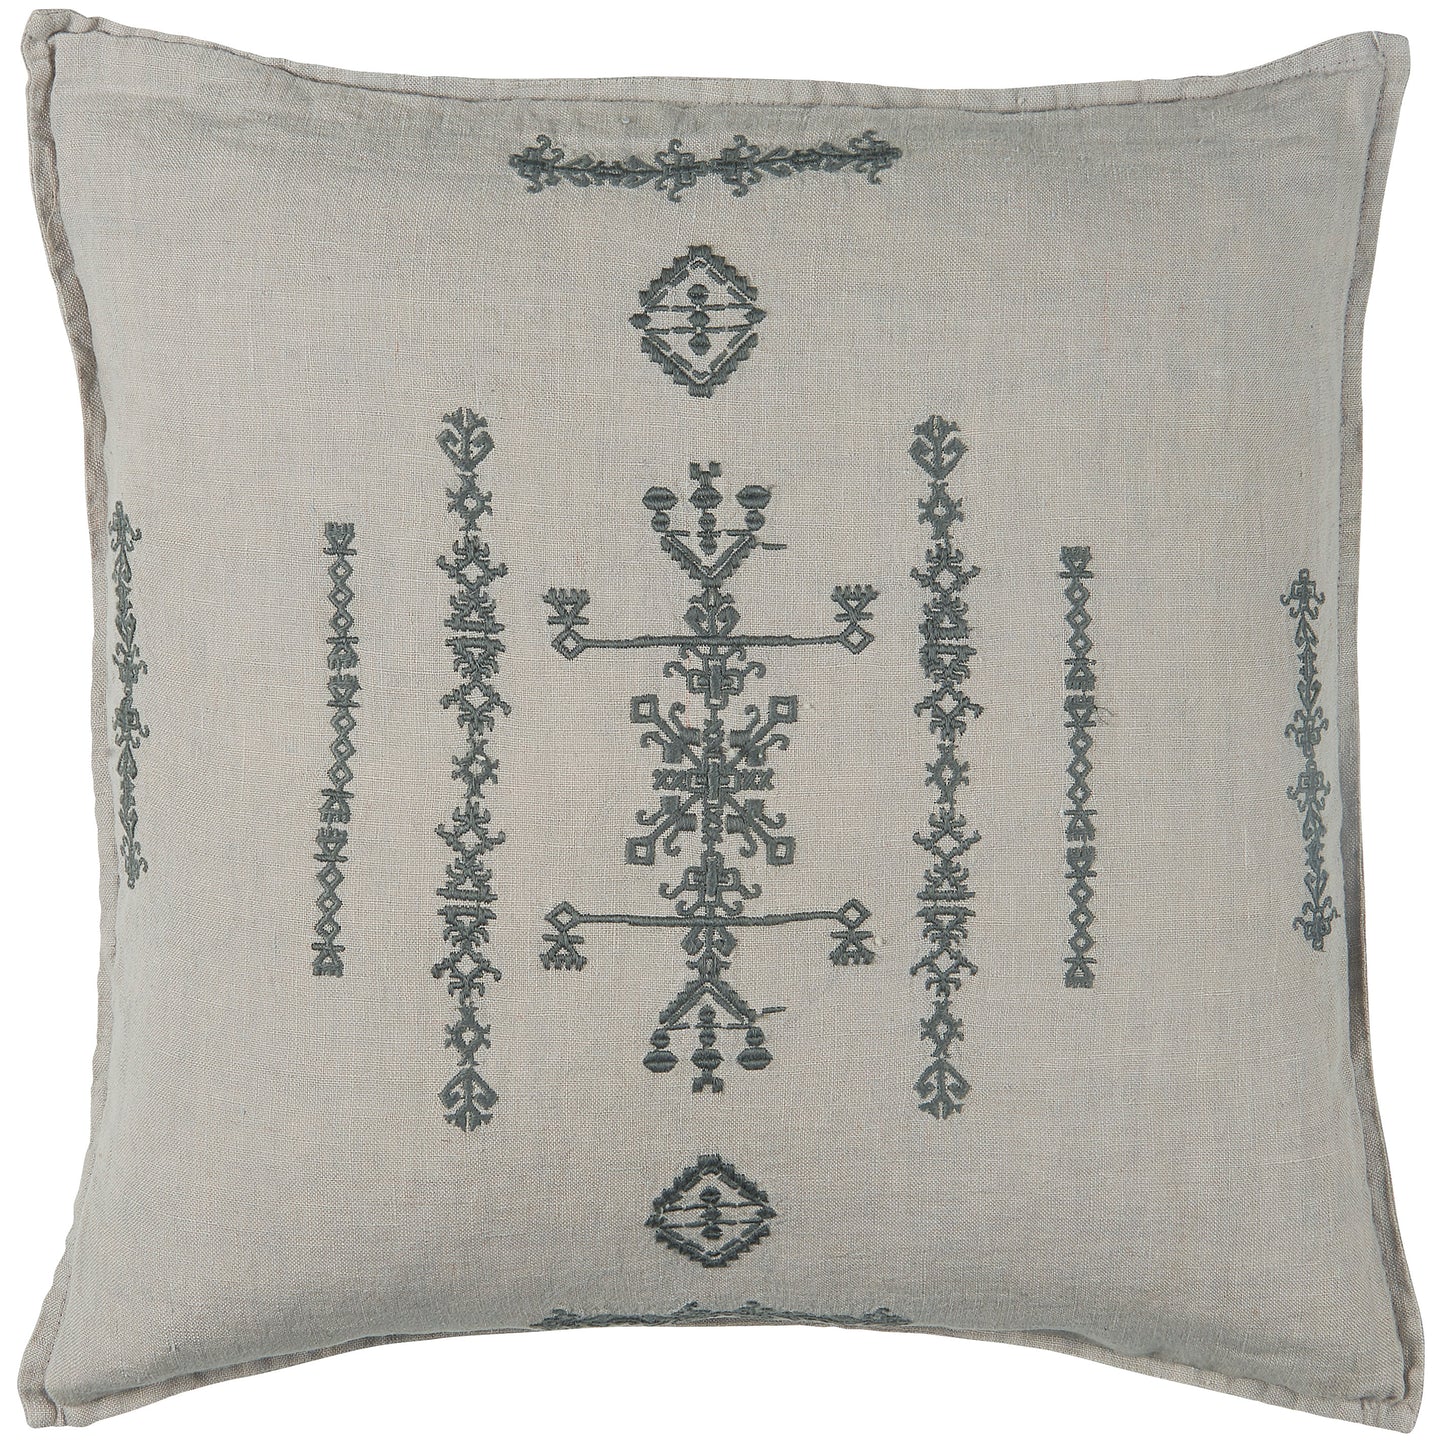 Grey Cushion Cover - Dark Grey Embroidery